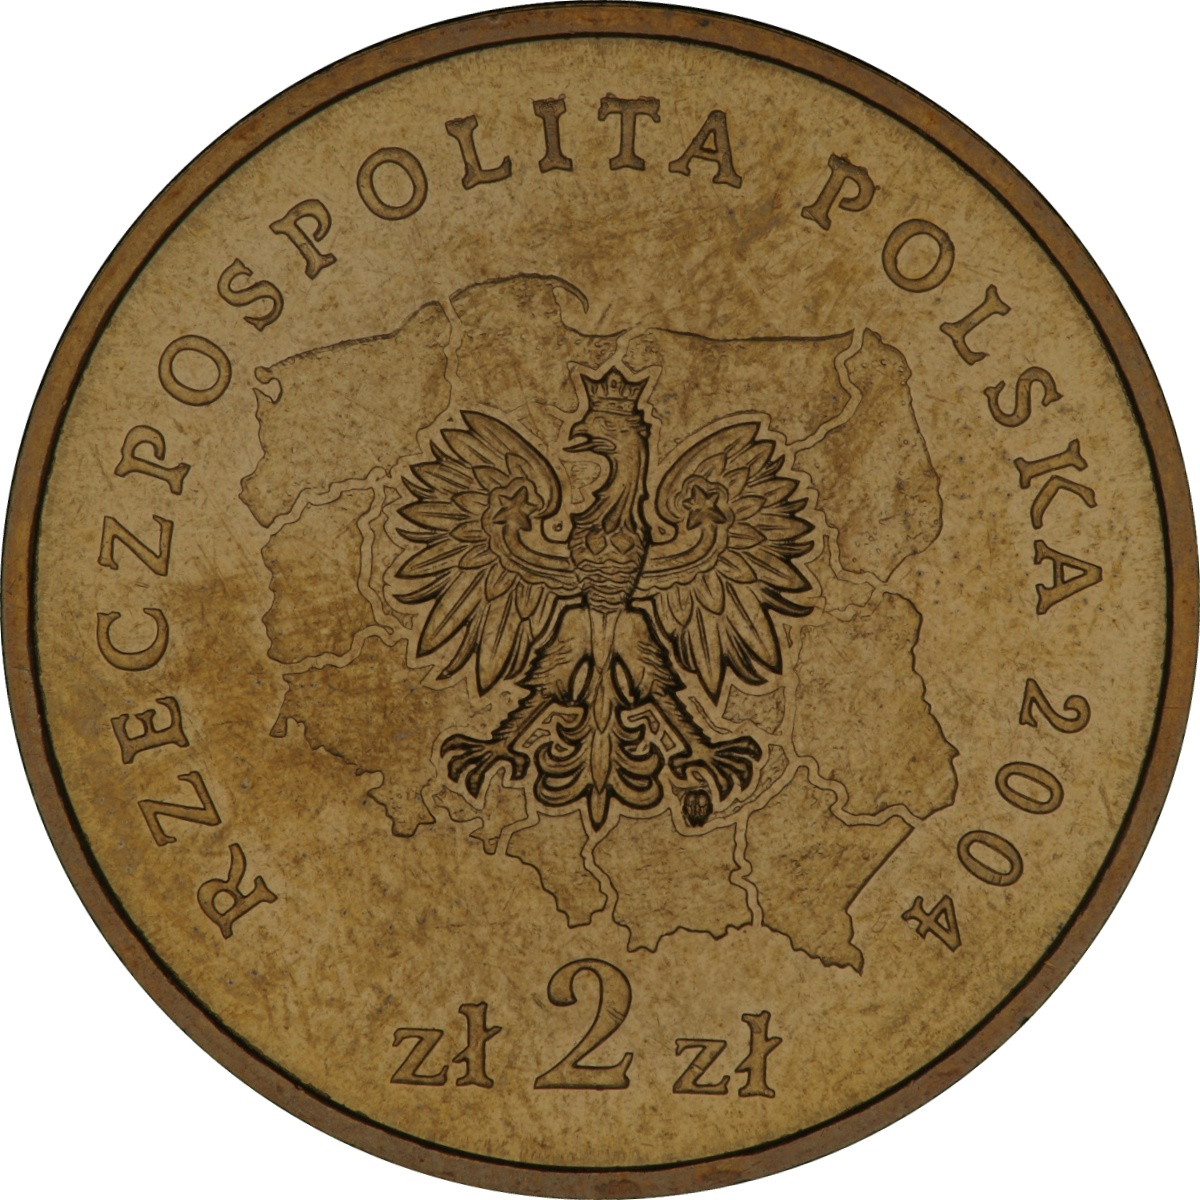 2zl-okolicznosciowe-wojewodztwo-lubuskie-awers-monety